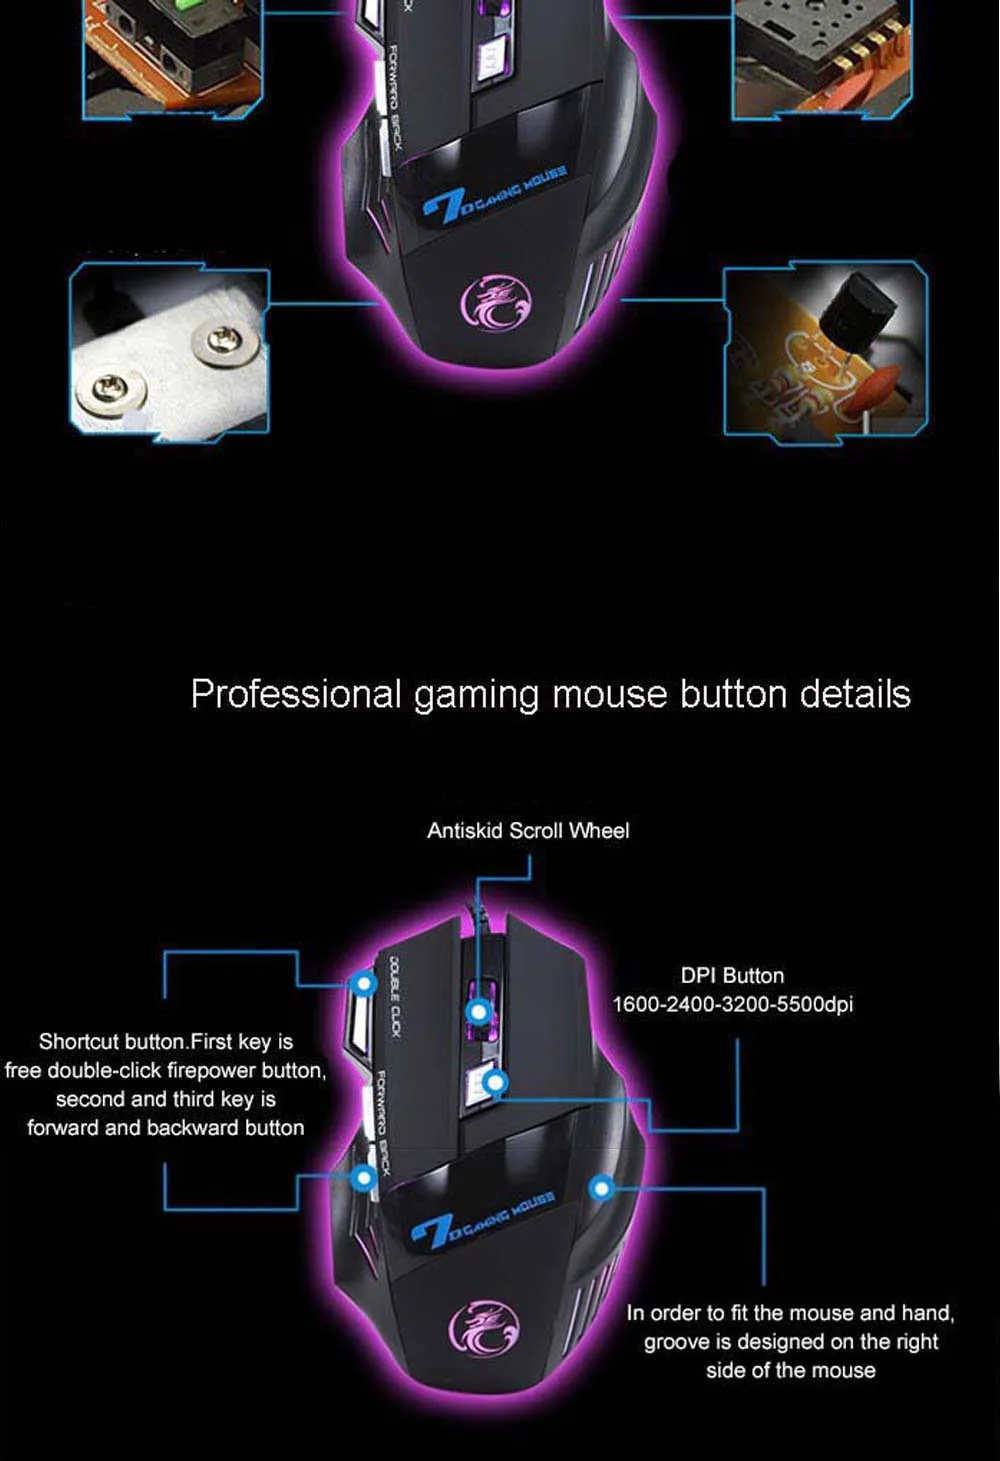 Игровая стереогарнитура Hunterspider V1 Heaphone с микрофоном 7 светодиодный светильник для Xbox One PS4 PC+ 7 кнопок 5500 dpi игровая мышь Игровые мыши